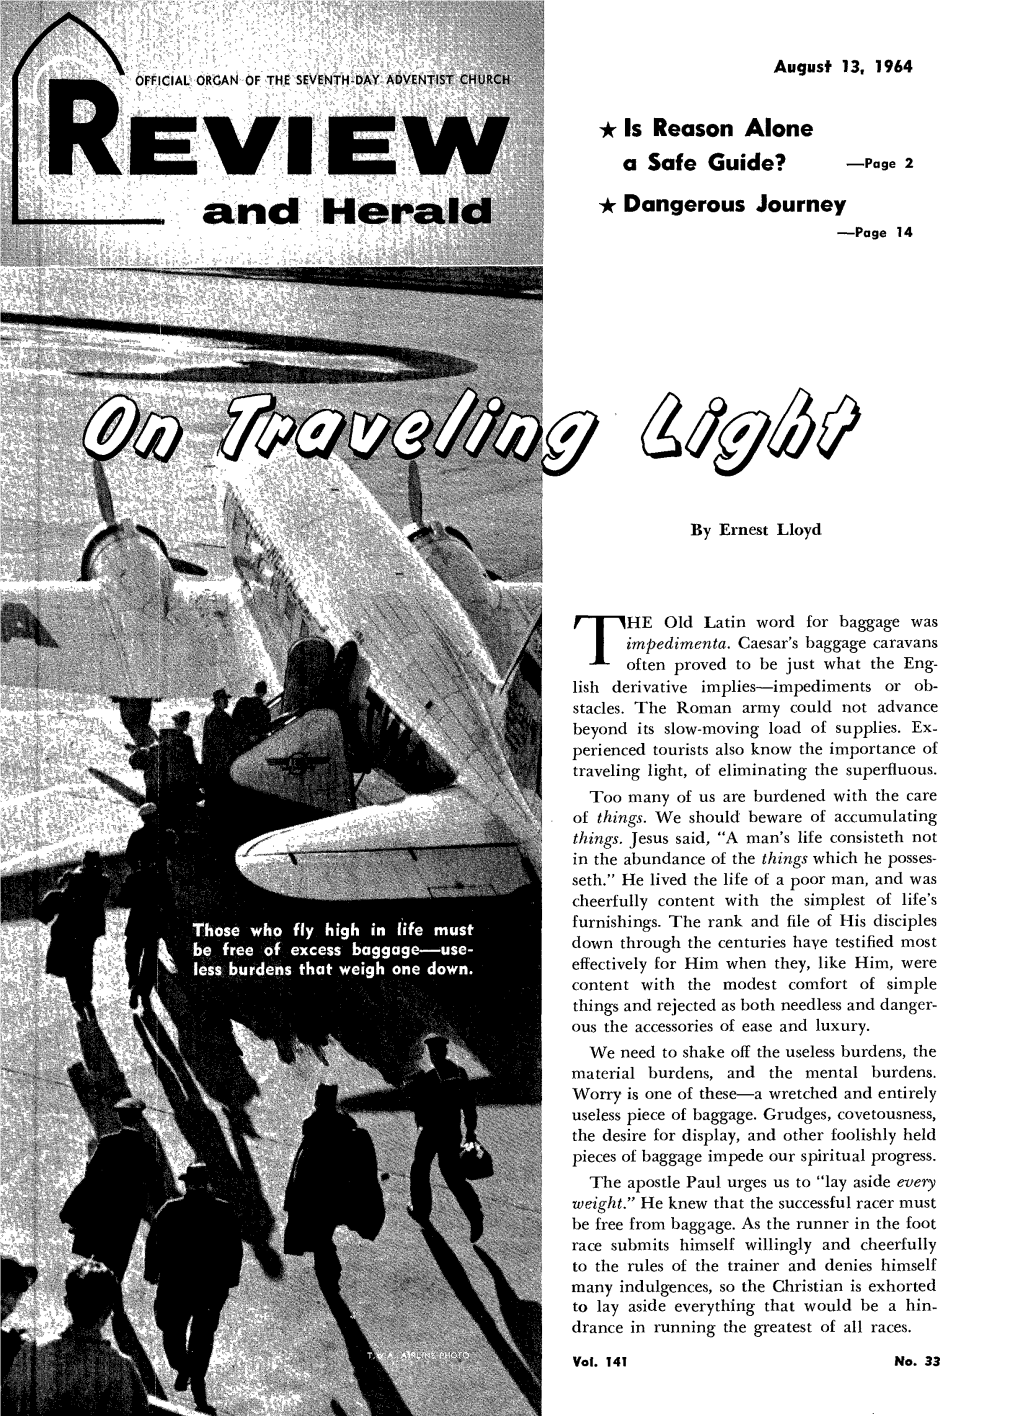 D Herald * Dangerous Journey —Page 14